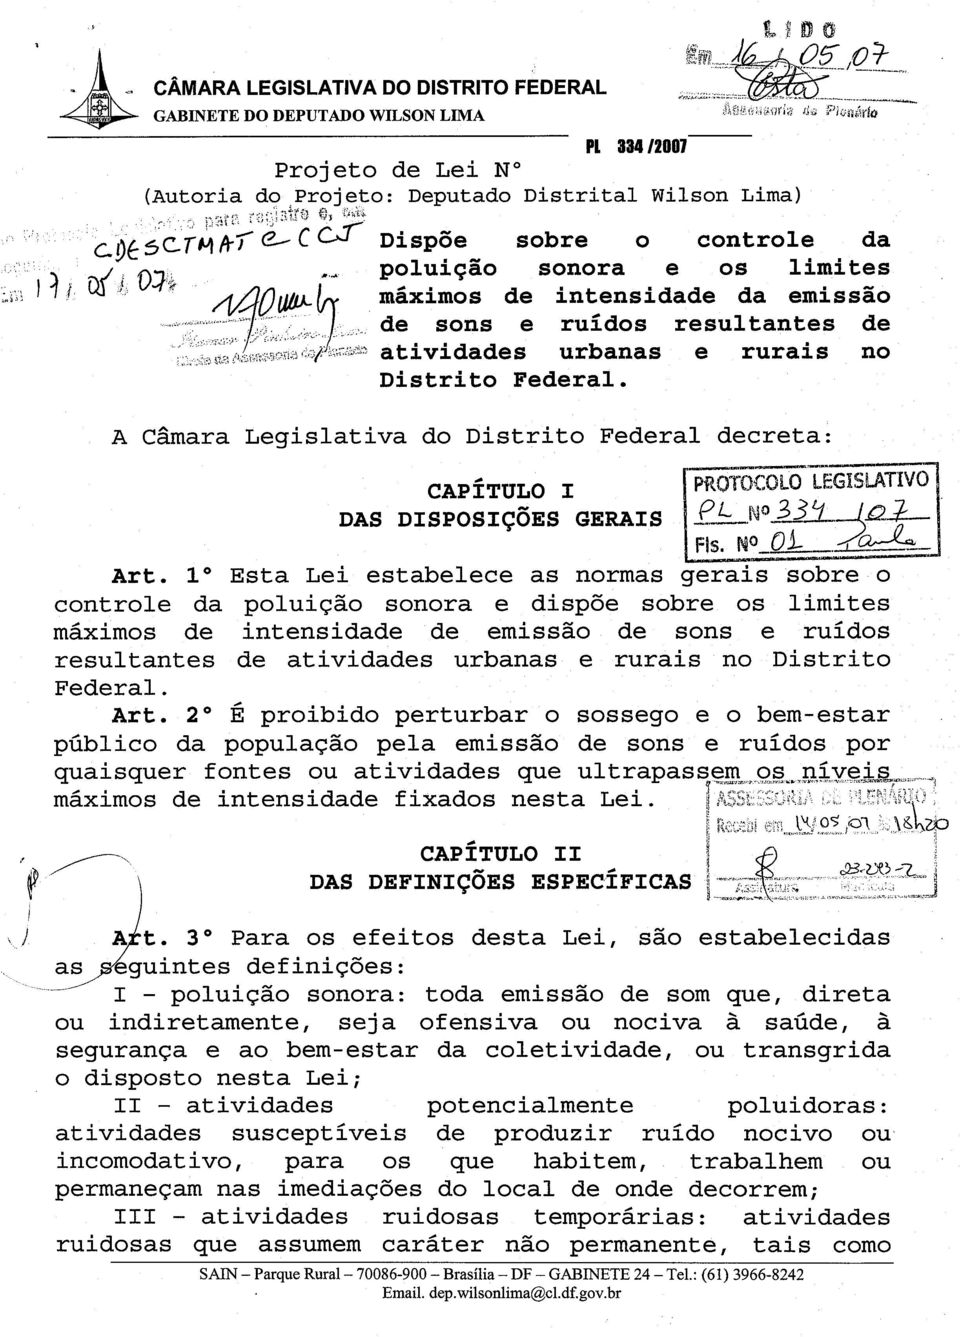 A Camara Legislativa do Distrito Federal decreta: CAPITULO I DAS DISPOSIC~ES GERAIS P-R -- PROTOCOLO BEGHS Art.